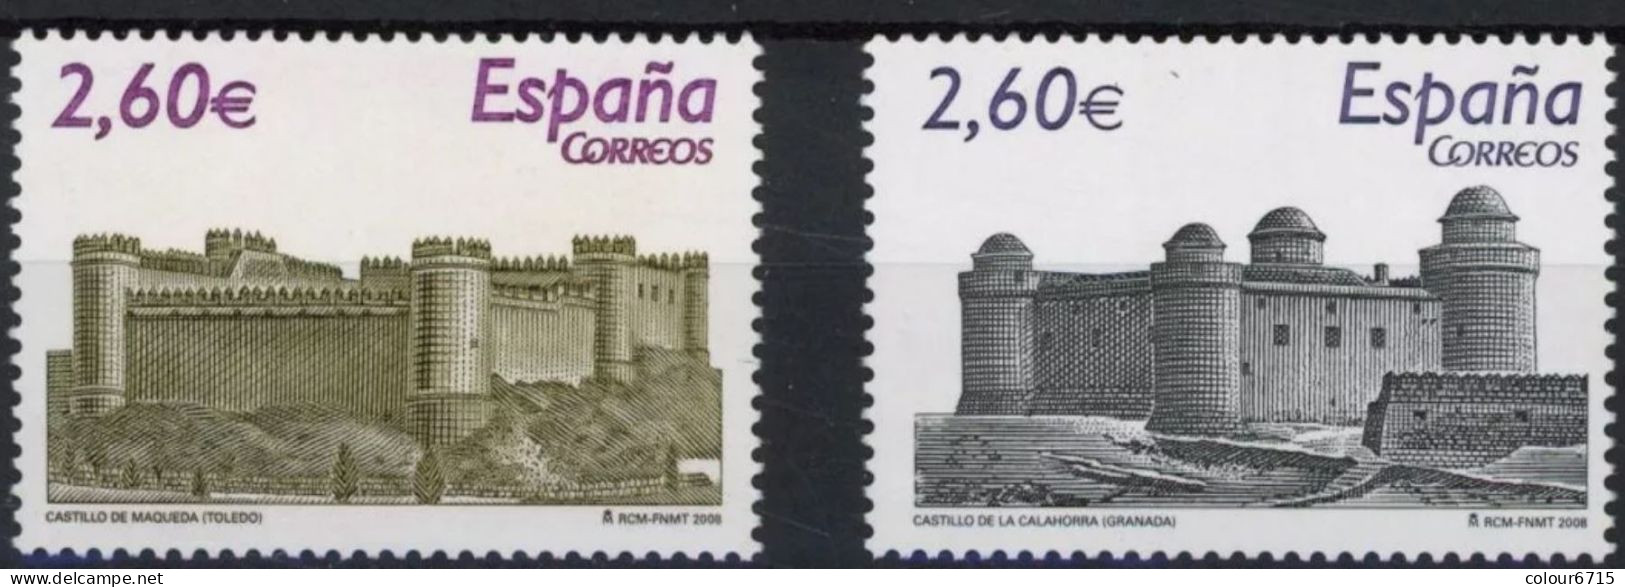 Spain 2008 Castles Stamps 2v MNH - Unused Stamps